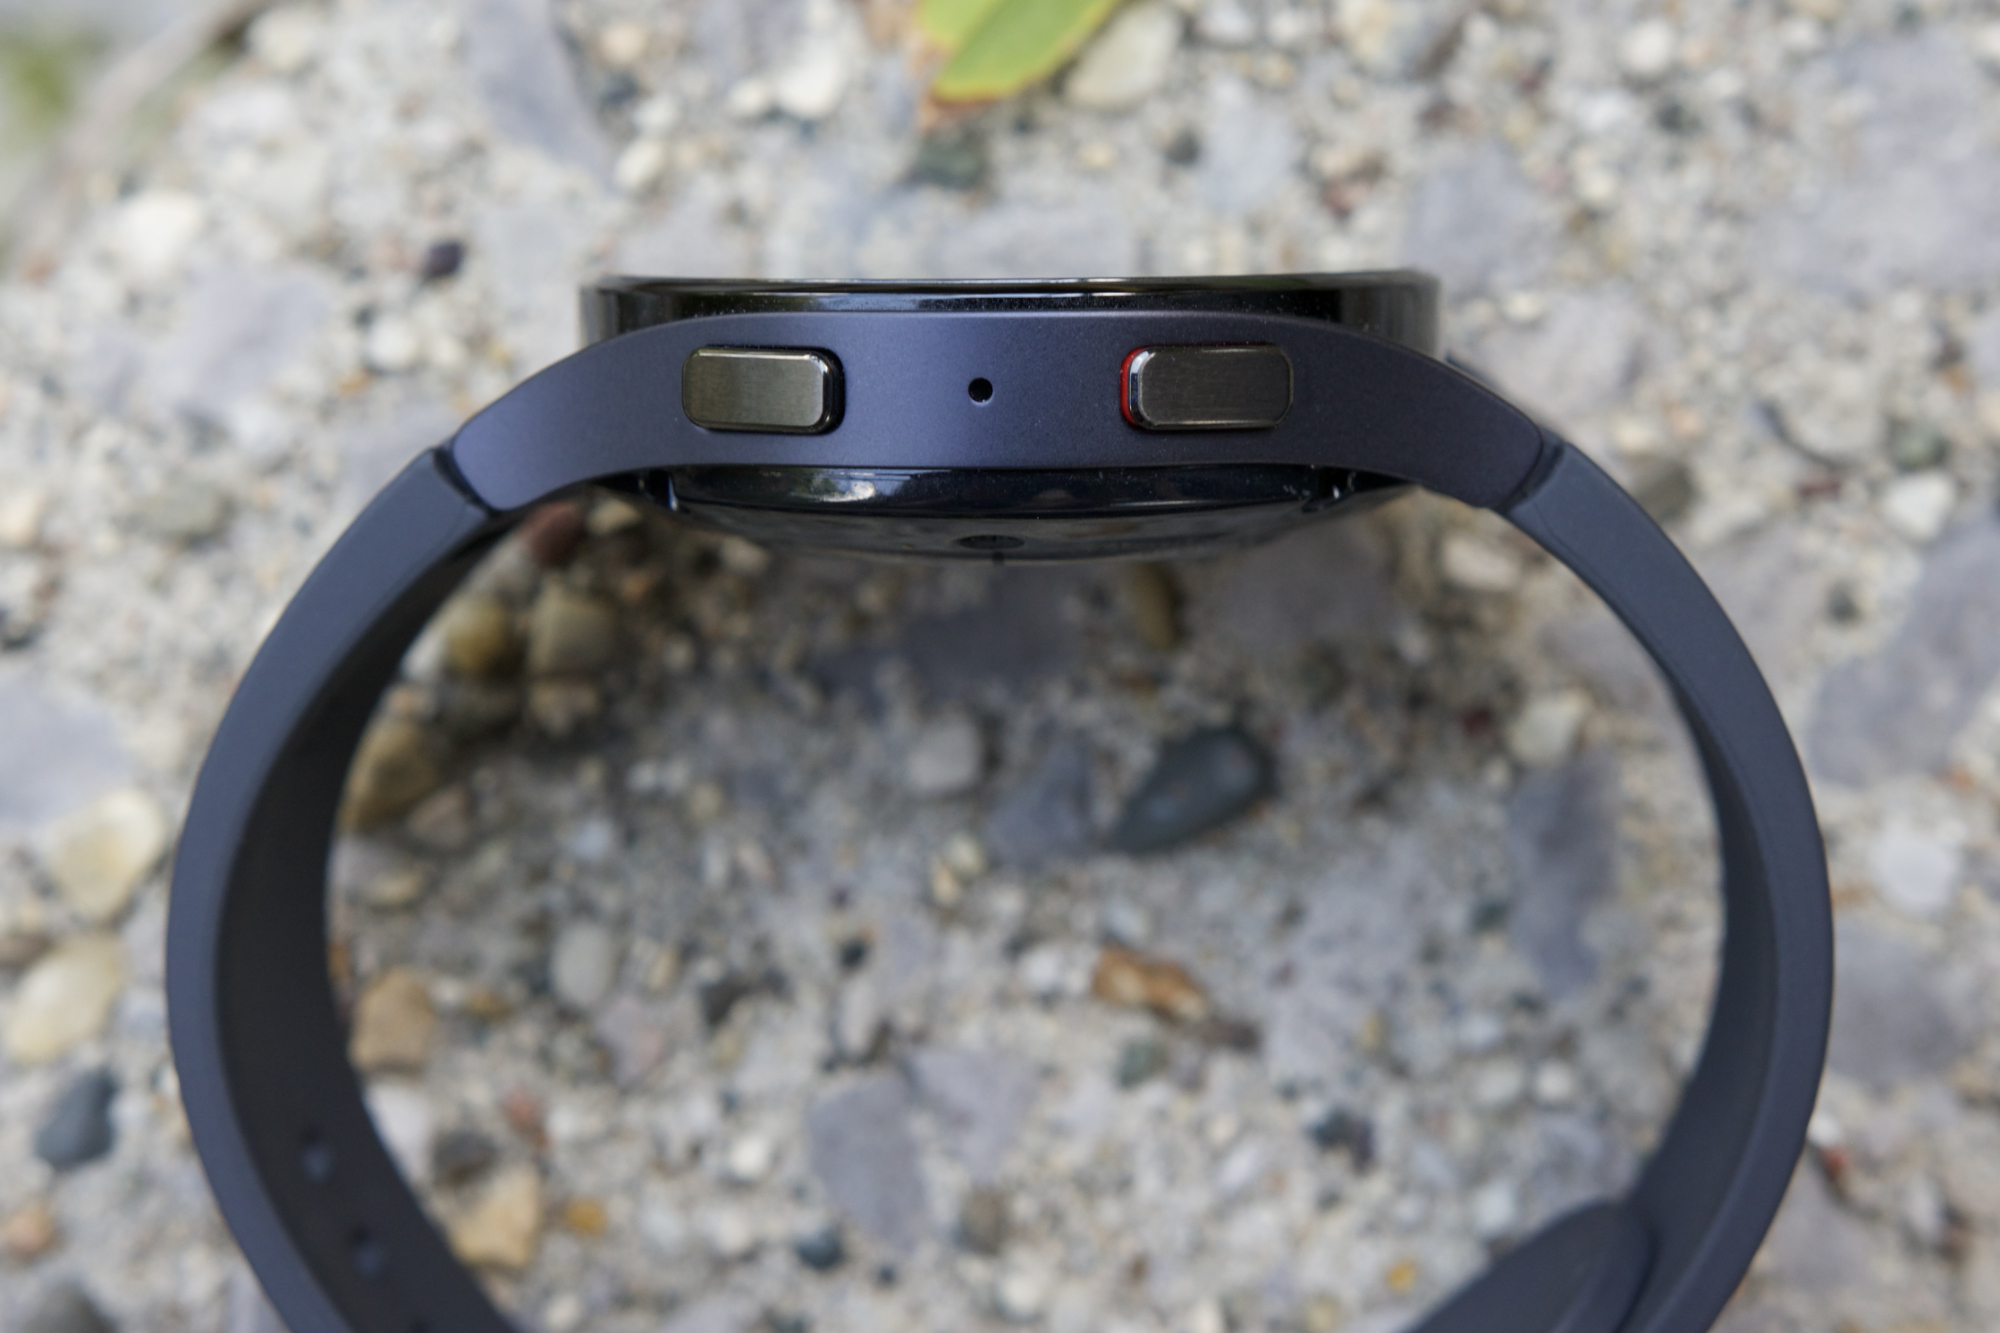 Sinn Dual Strap System Allows Apple Watch & Sinn Watch On The Same Wrist |  aBlogtoWatch